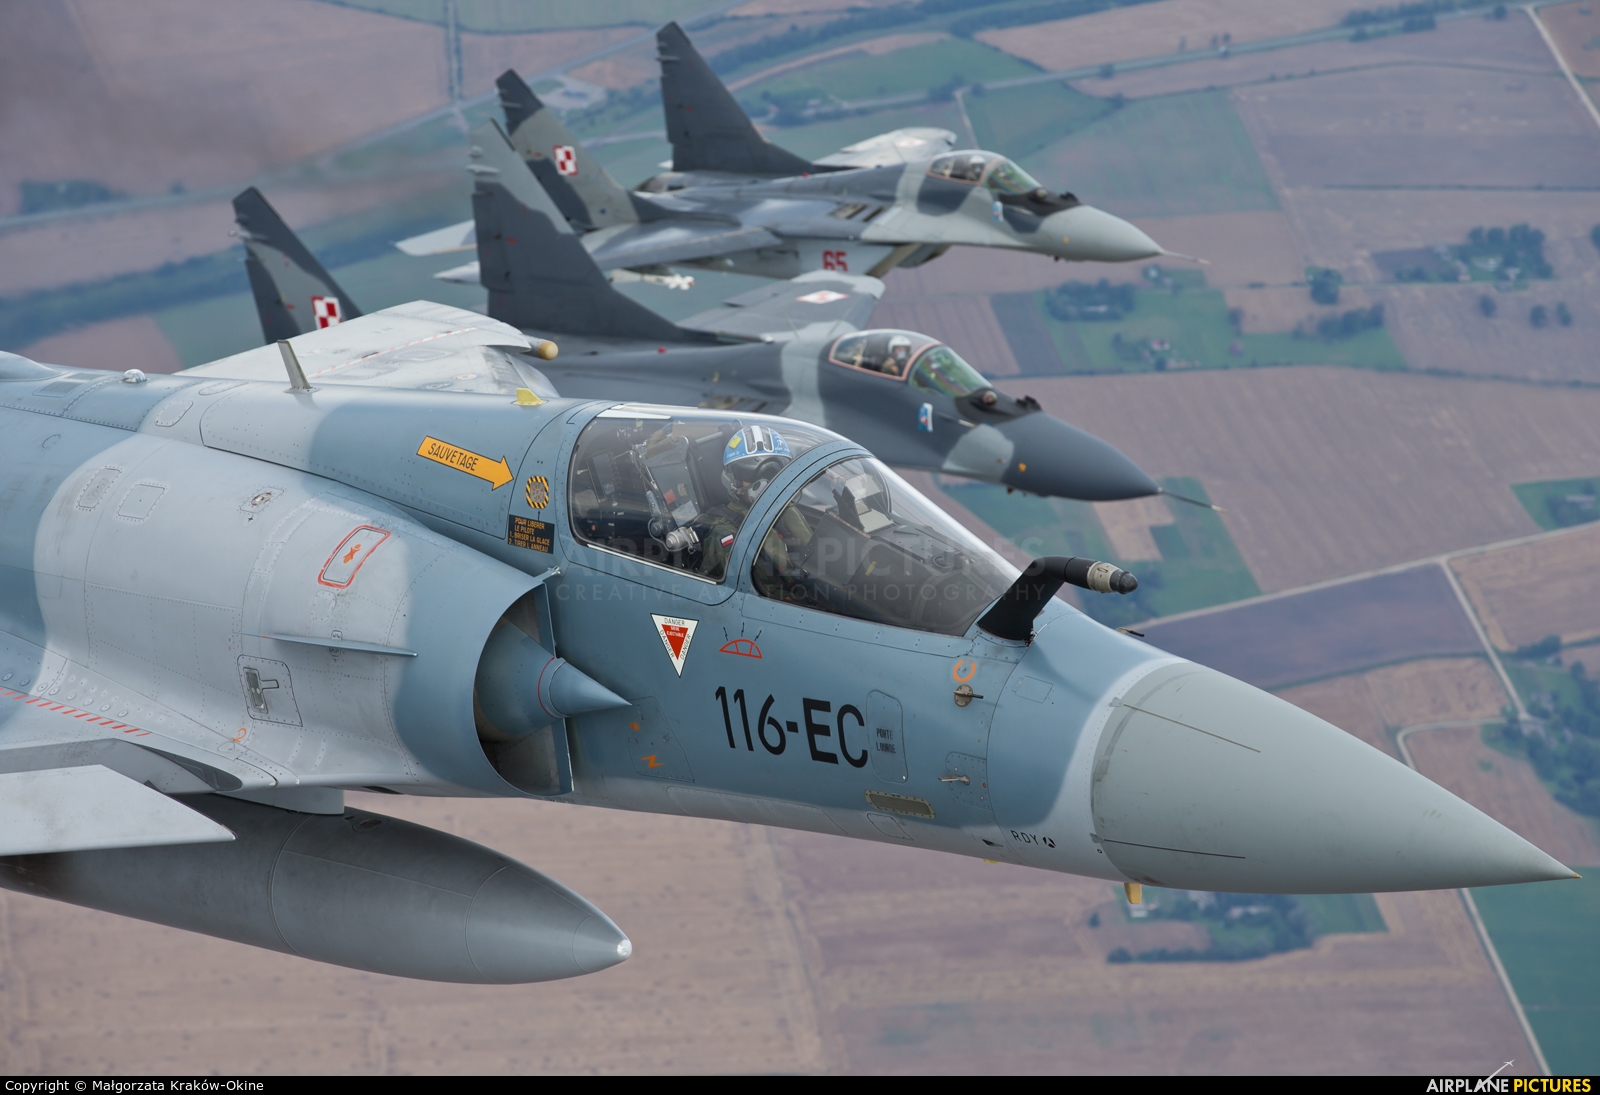 High Resolution Wallpaper | Dassault Mirage 2000 1600x1095 px